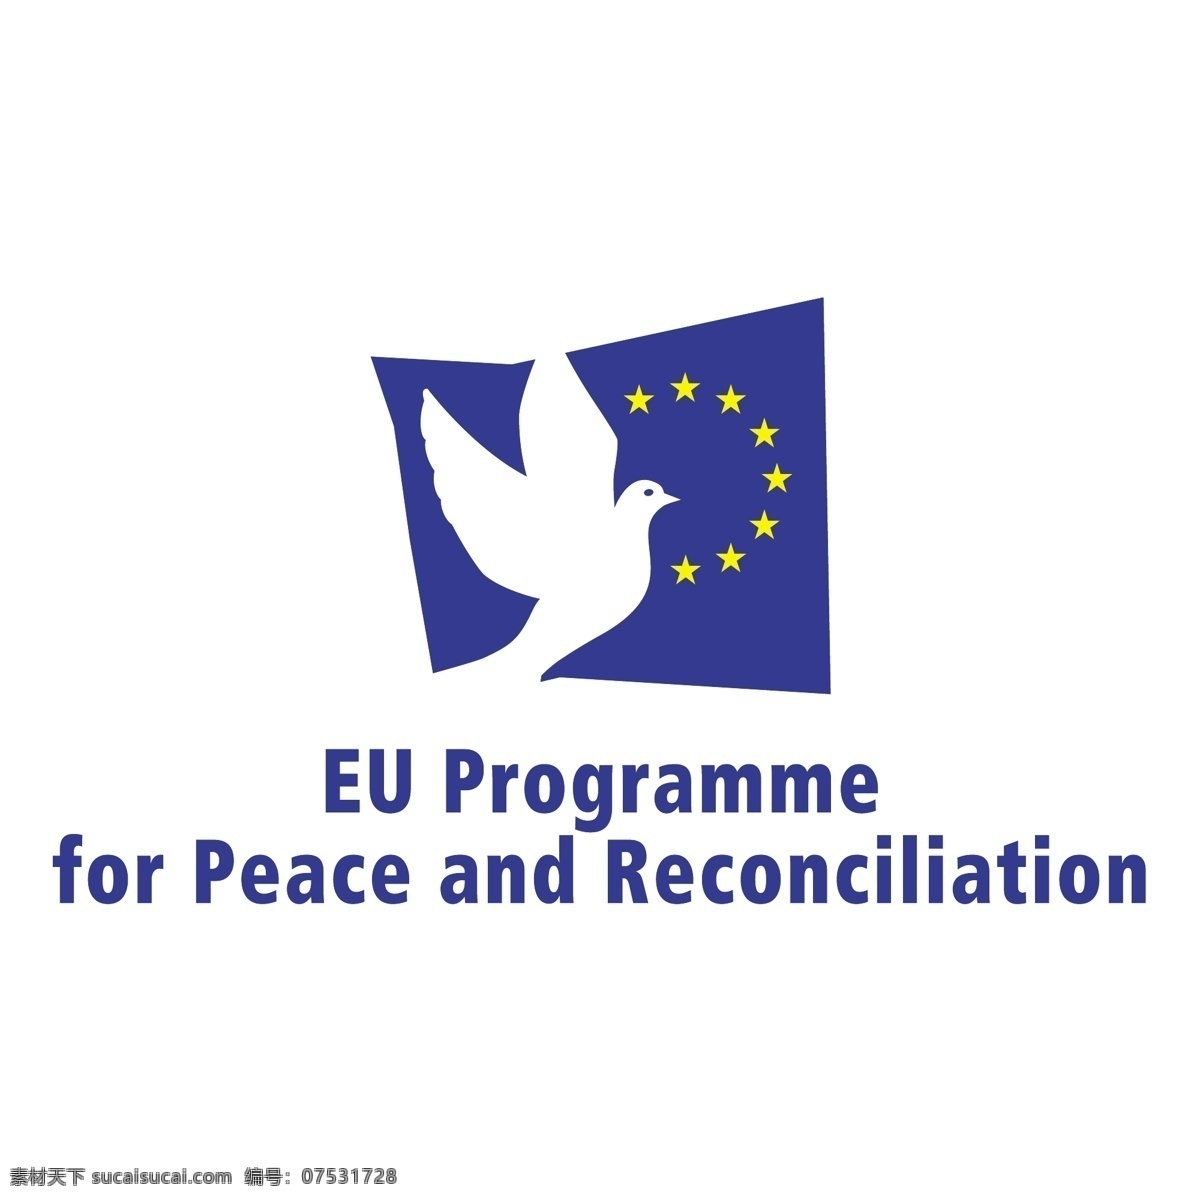 欧洲 和平 和解 自由 标志 psd源文件 logo设计